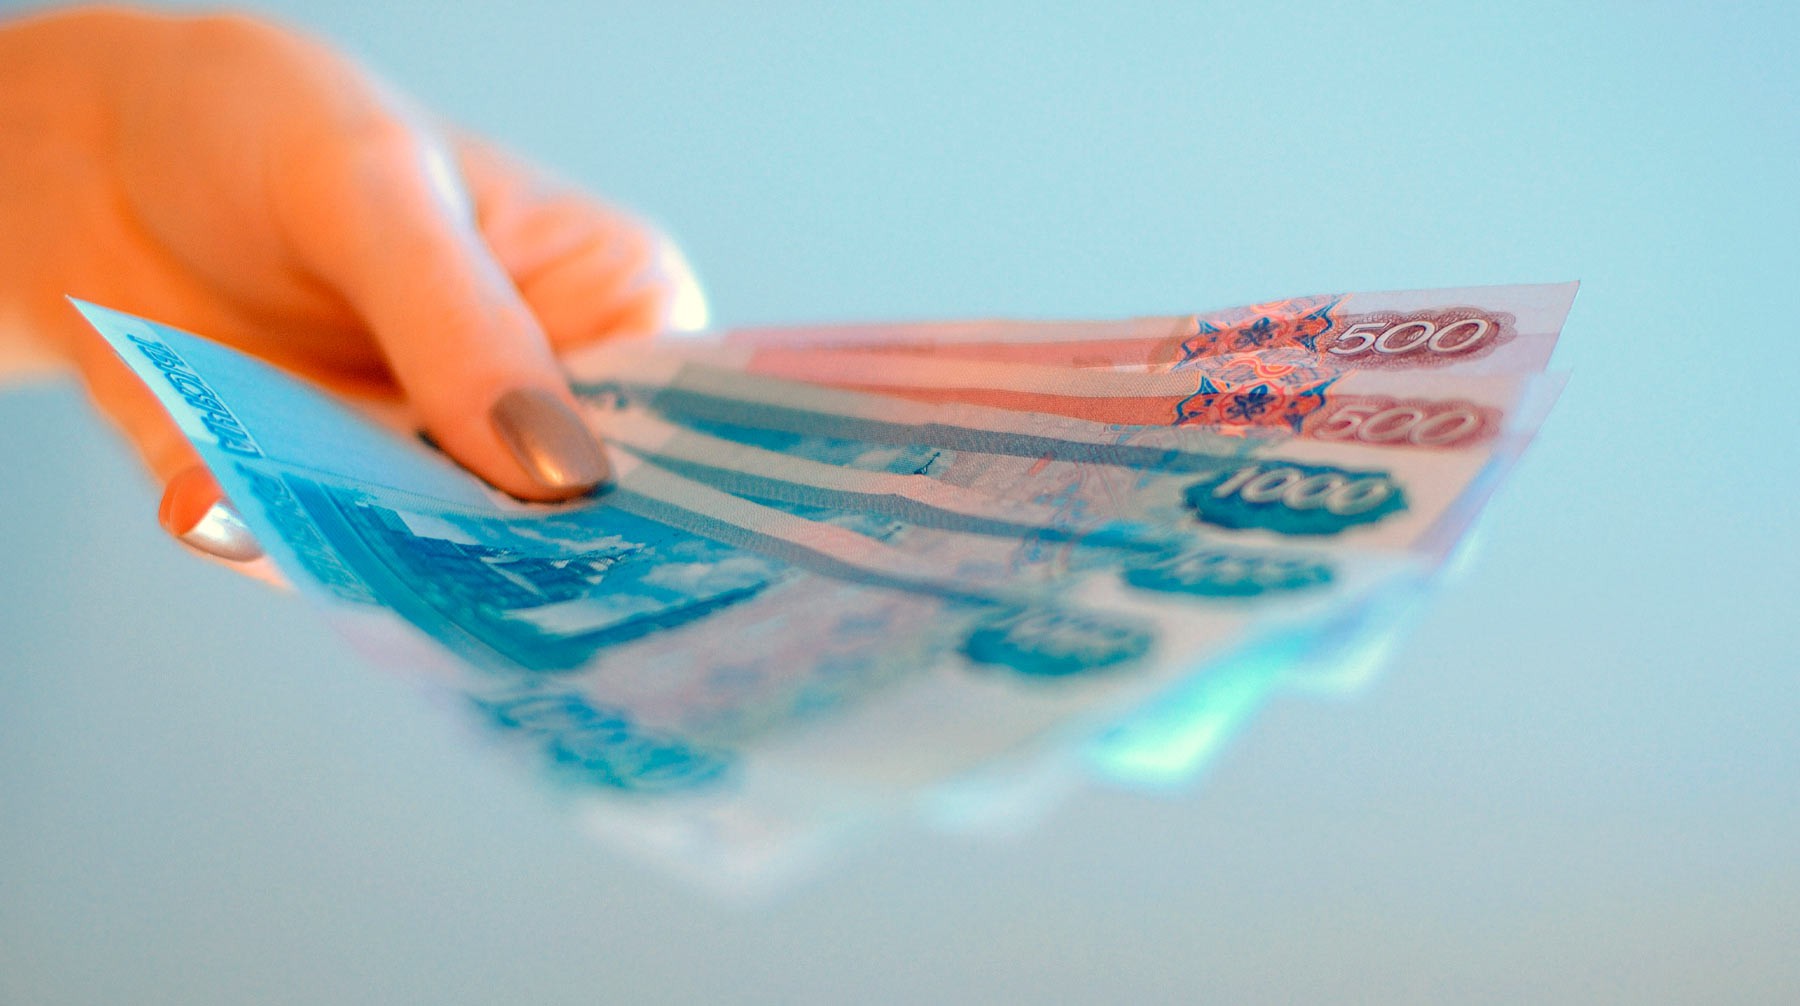 Dailystorm - Проверьте себя: когда в России появились бумажные деньги?